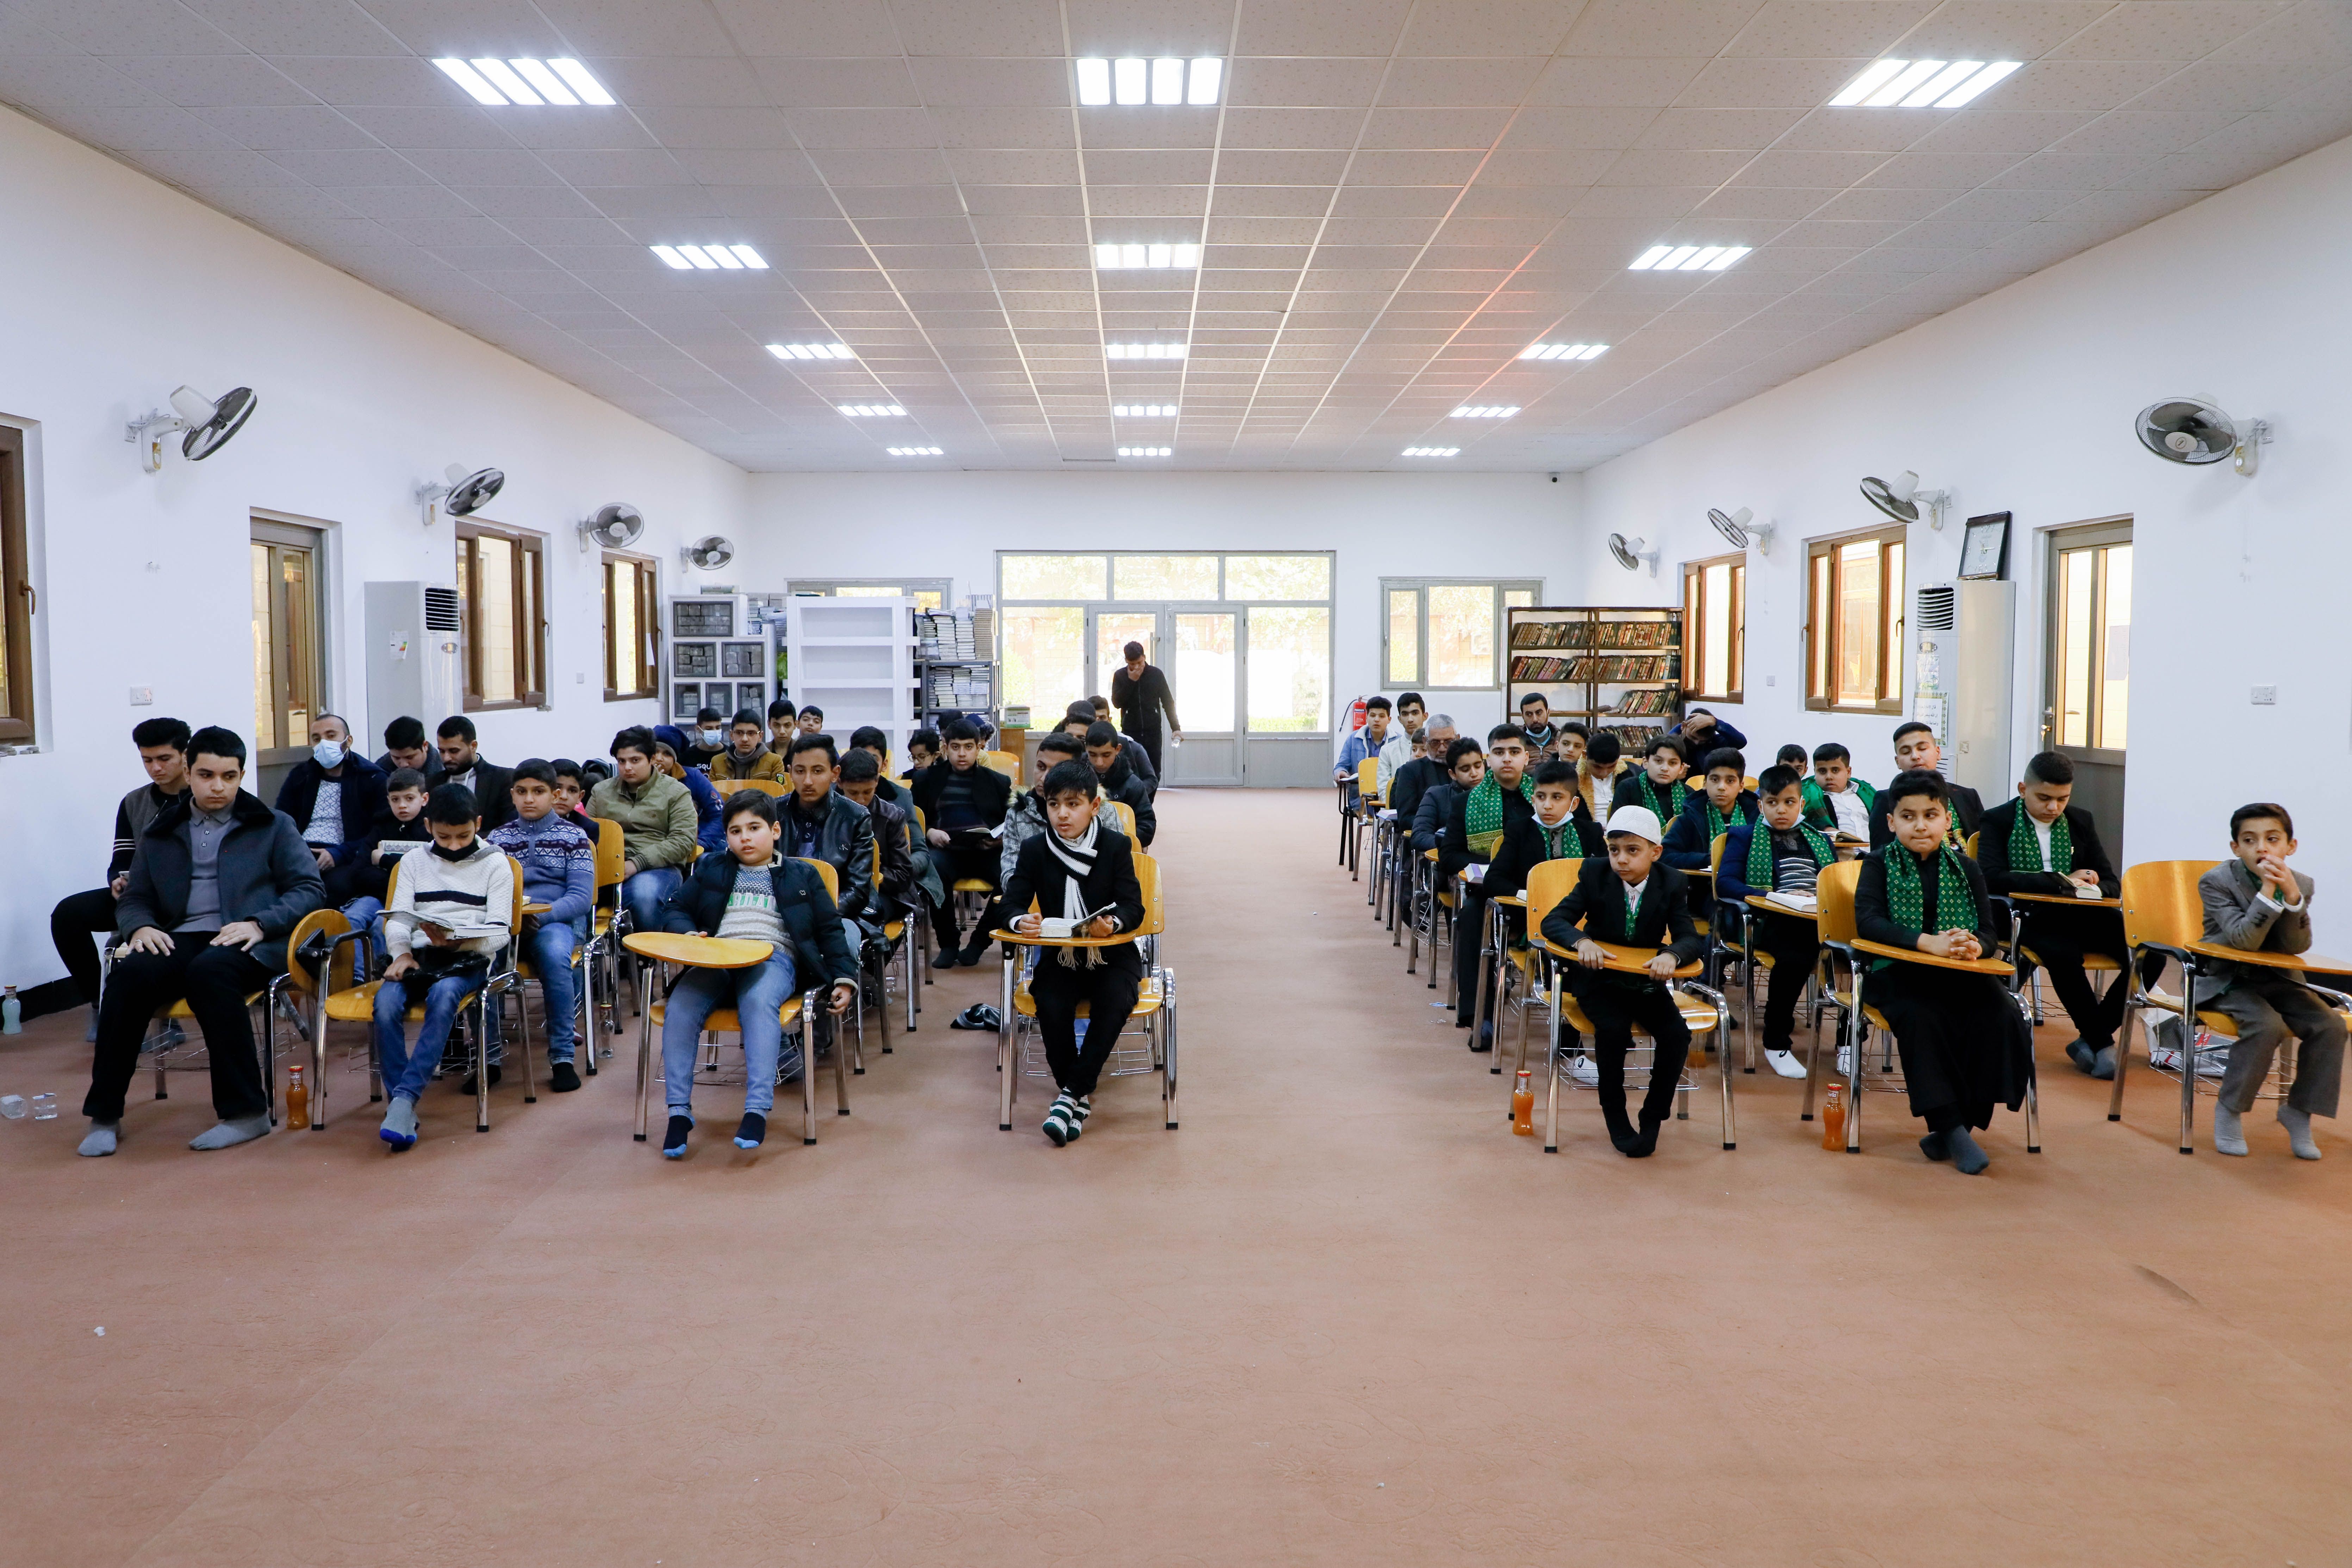 أكثر من 80 طالبا يشاركون في الاختبار المركزي لمشروع حفظ القرآن الكريم في كربلاء المقدسة